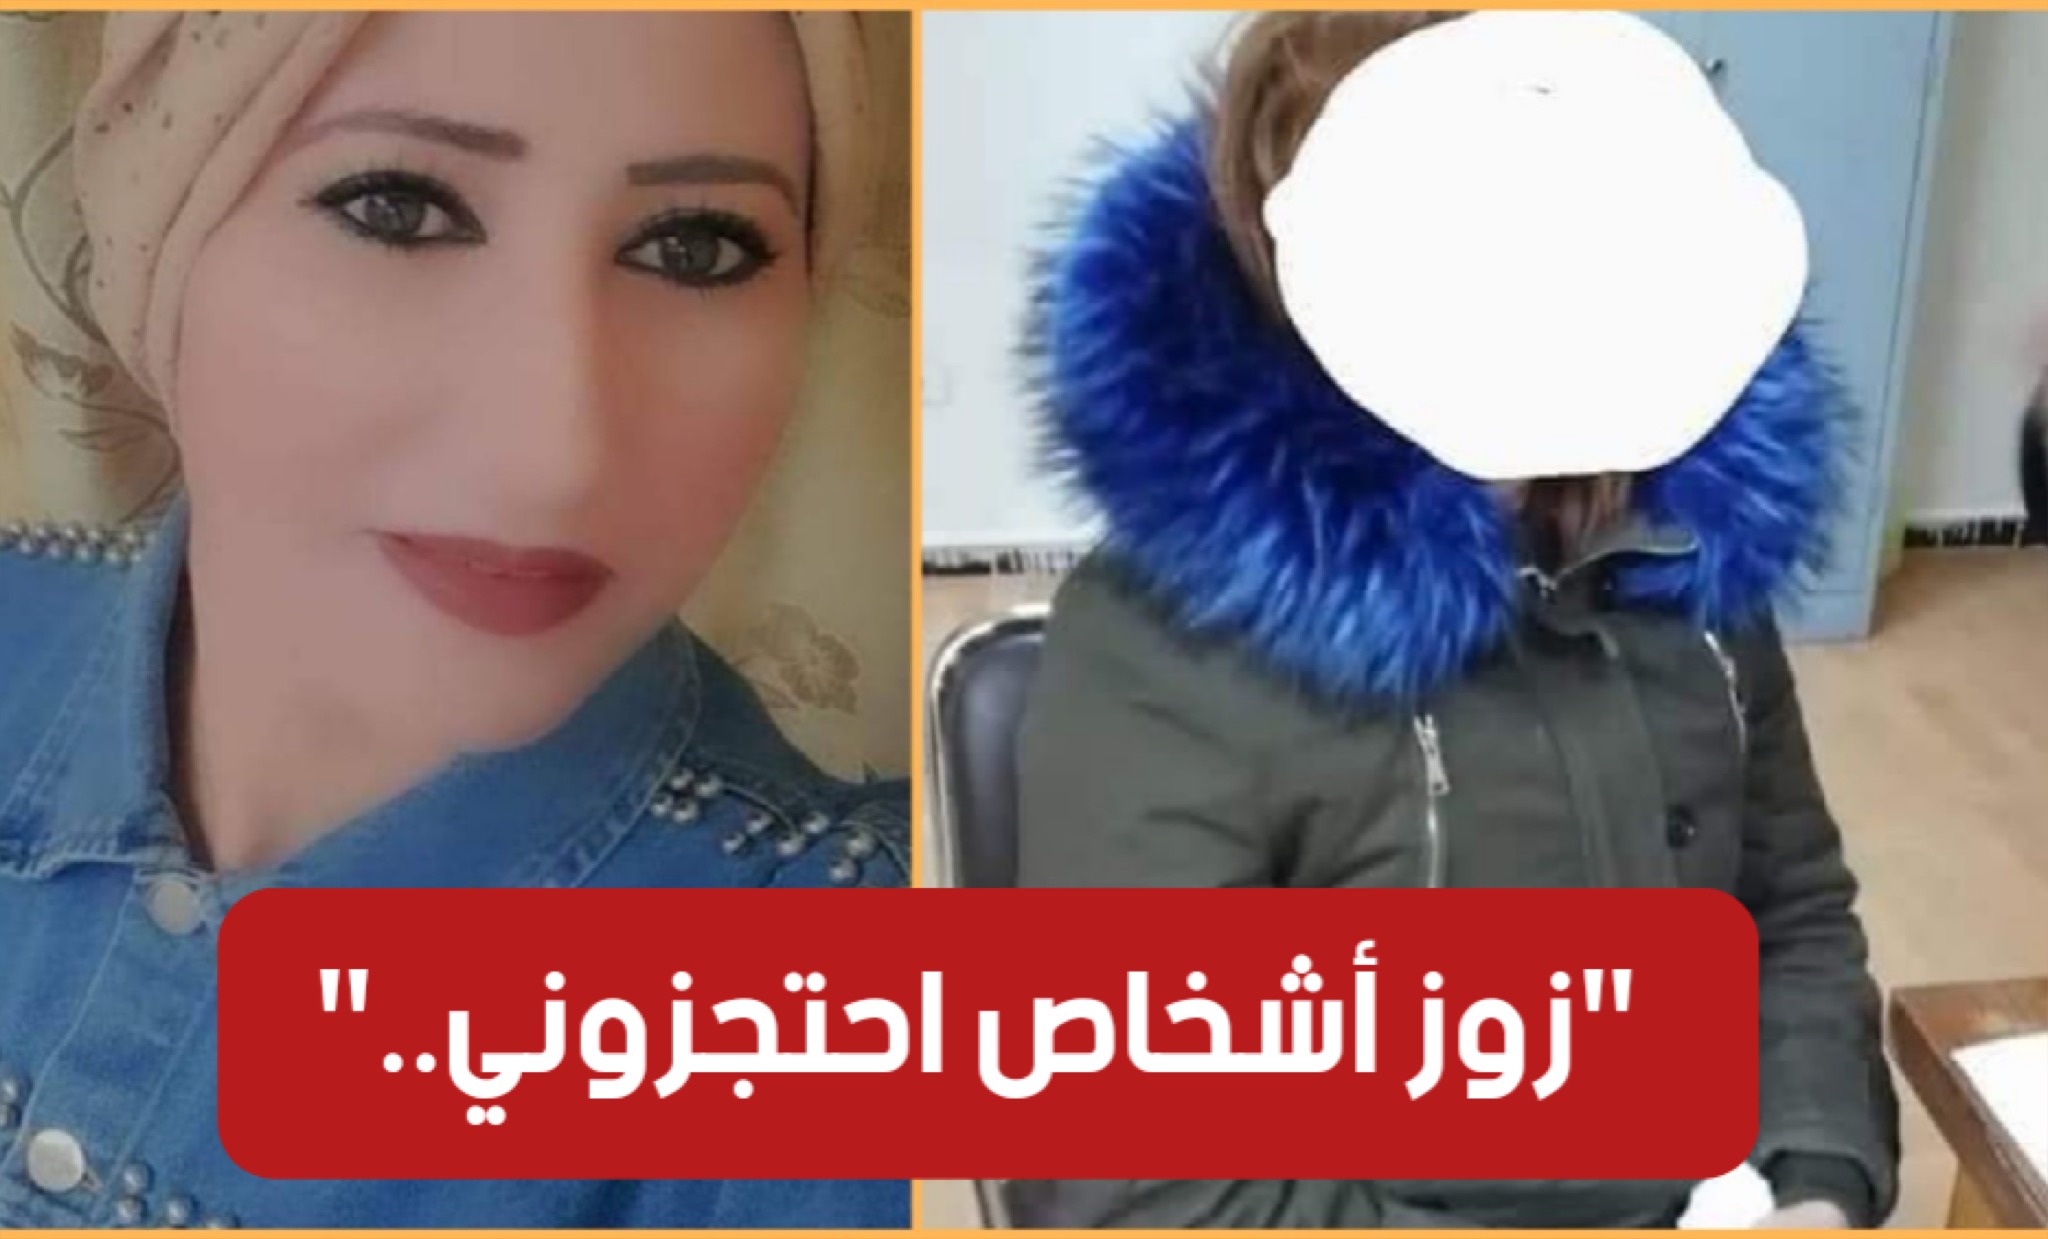 سيدي بوزيد : العثور على المرأة التي تم اختطافها في قابس.. وهذه تصريحاتها :”احتجزوني في دار..” (فيديو)